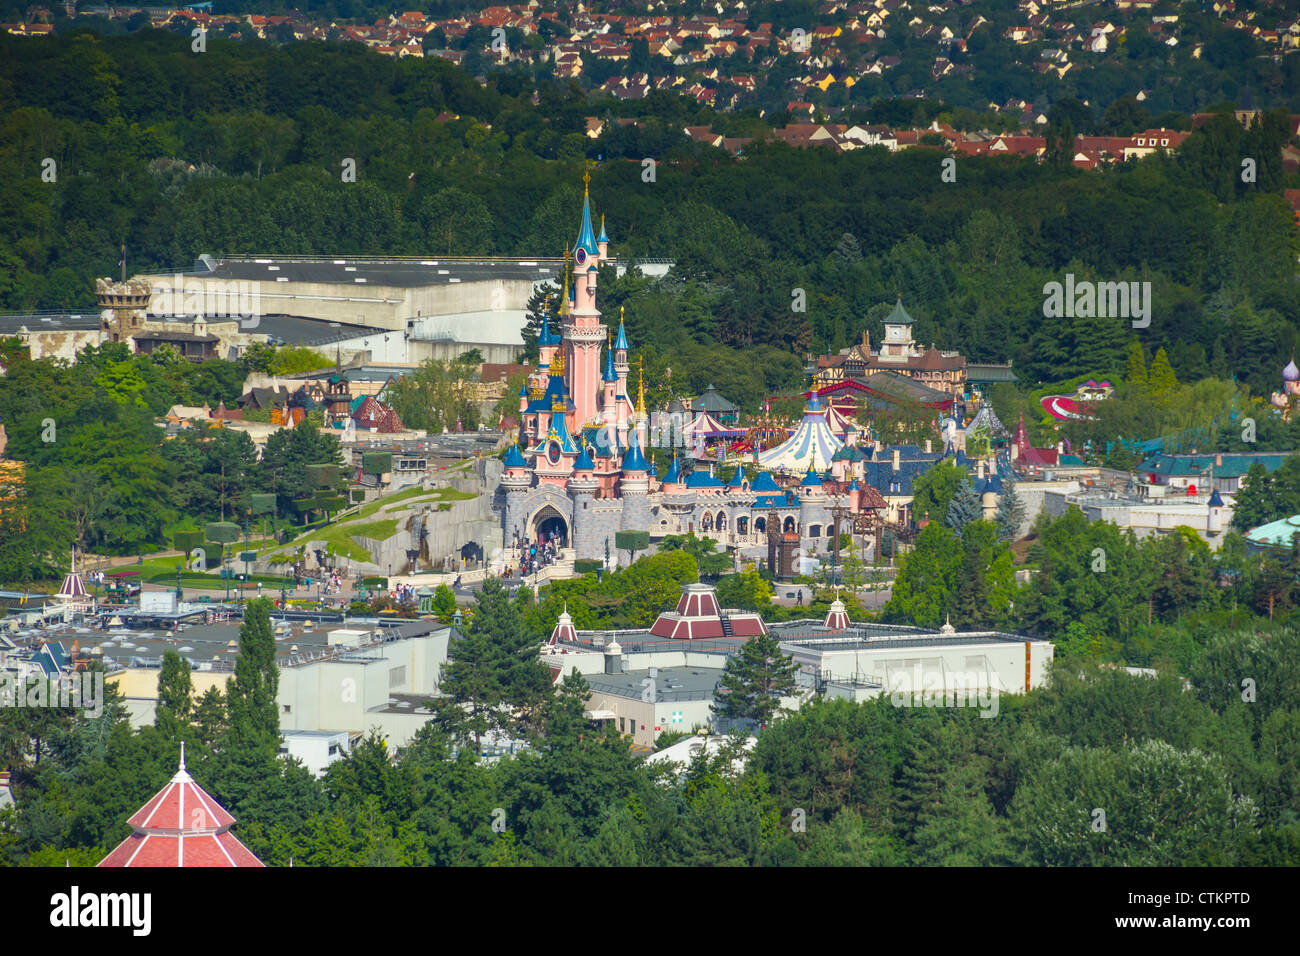 Vue aérienne de hélium ballon au Lac Disney sur Sleeping Beauty Castle et Parc Disneyland, Disneyland Resort Paris, France Banque D'Images